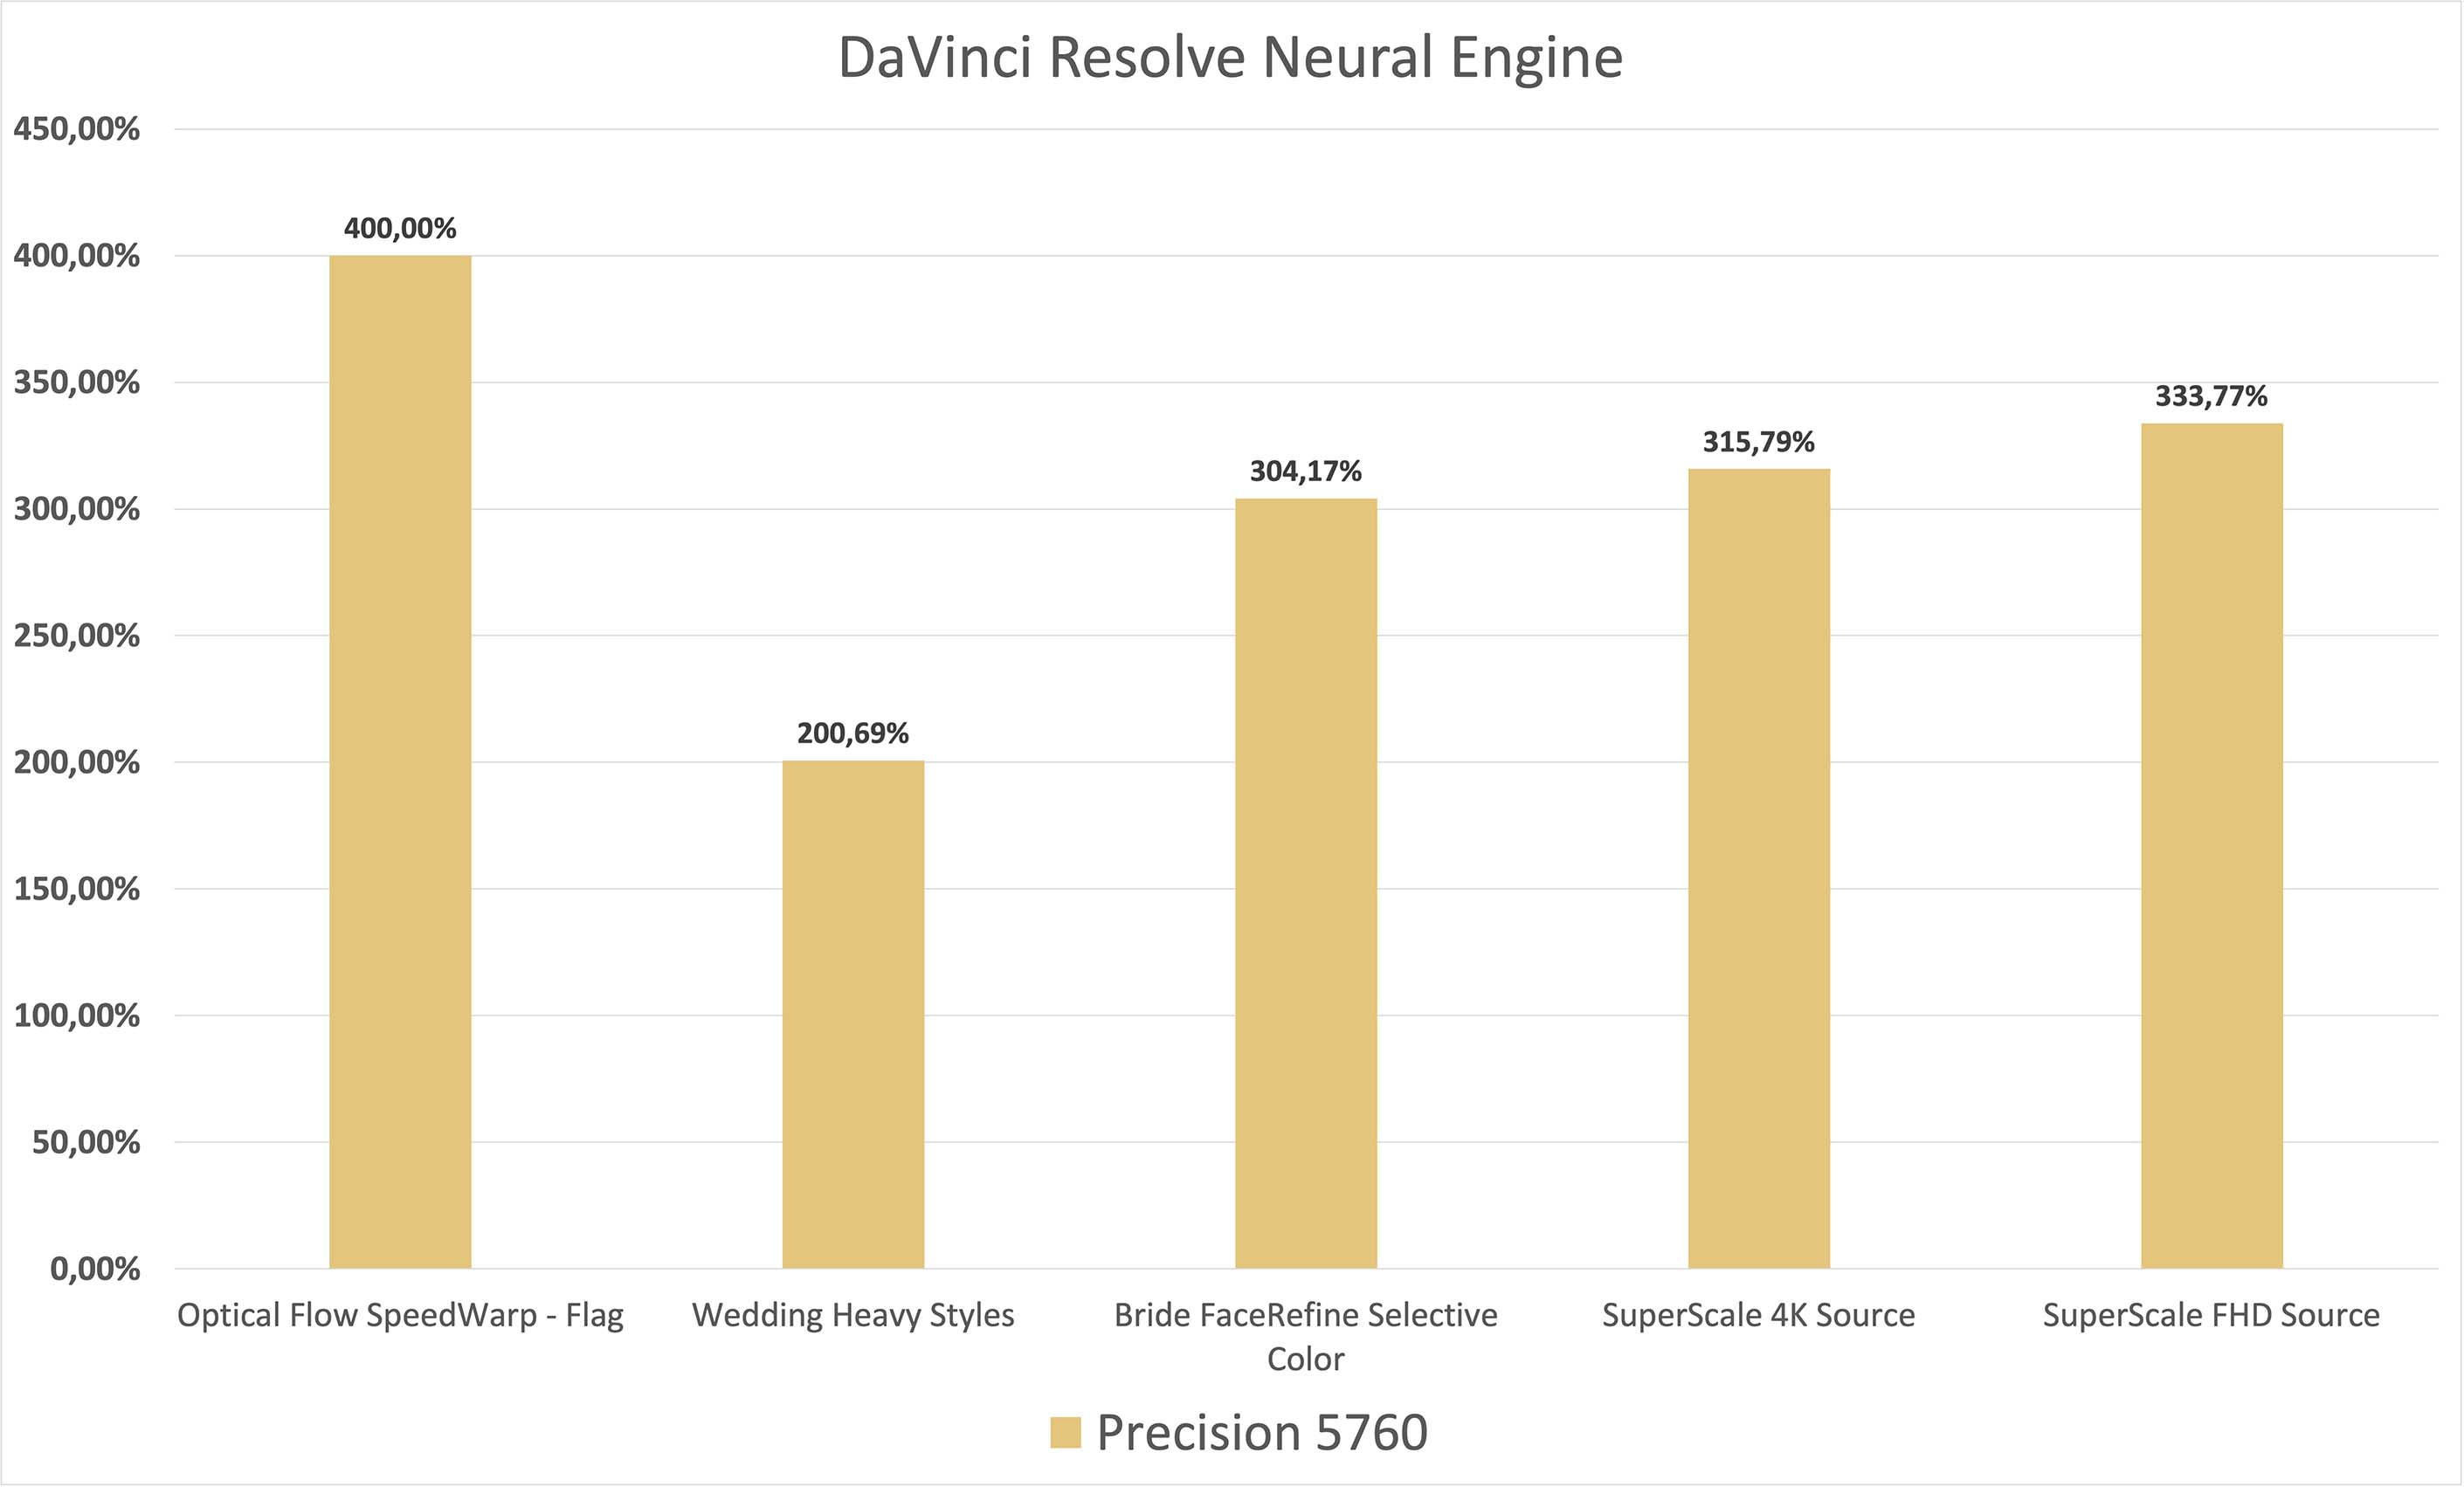 Le moteur neuronal de Davinci Resolve 17 permet de réaliser de nombreux effets spéciaux s’appuyant sur l’IA.